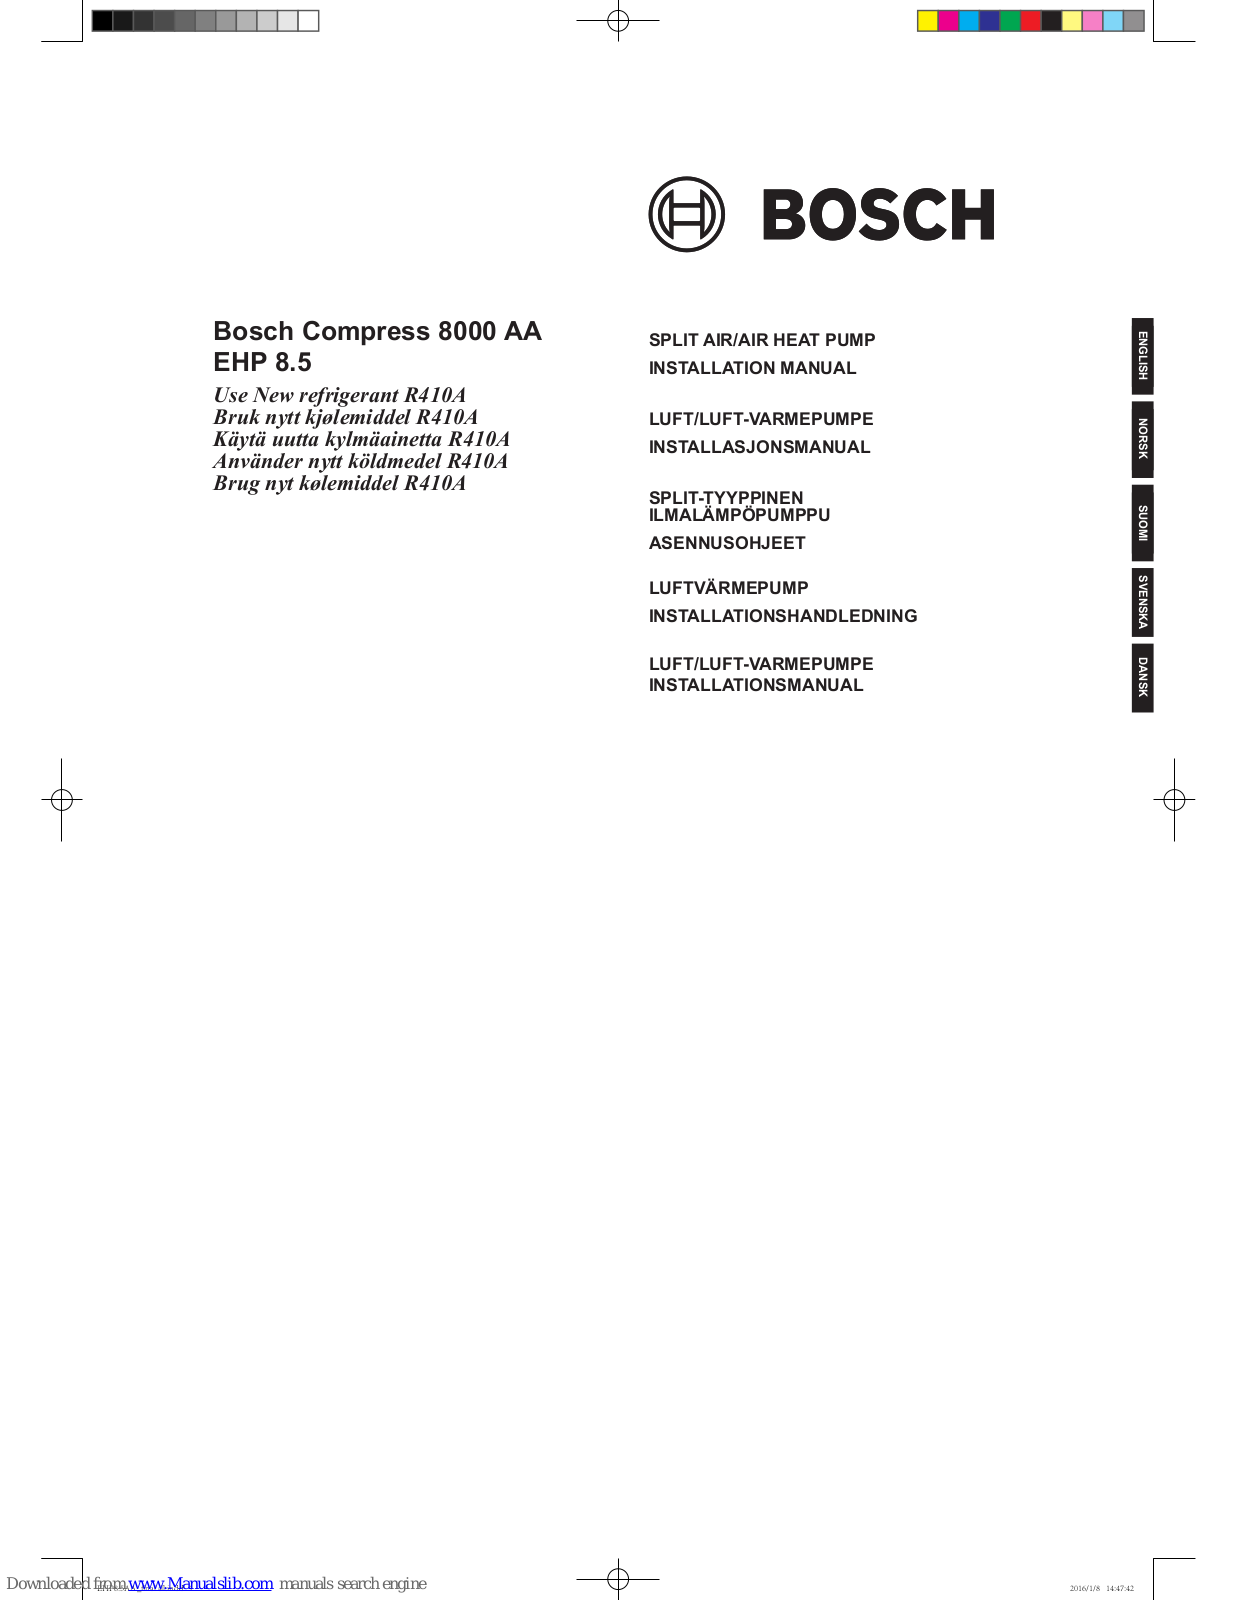 Bosch EHP 8.5 AA/I, EHP 8.5 AA/O Installation Manual